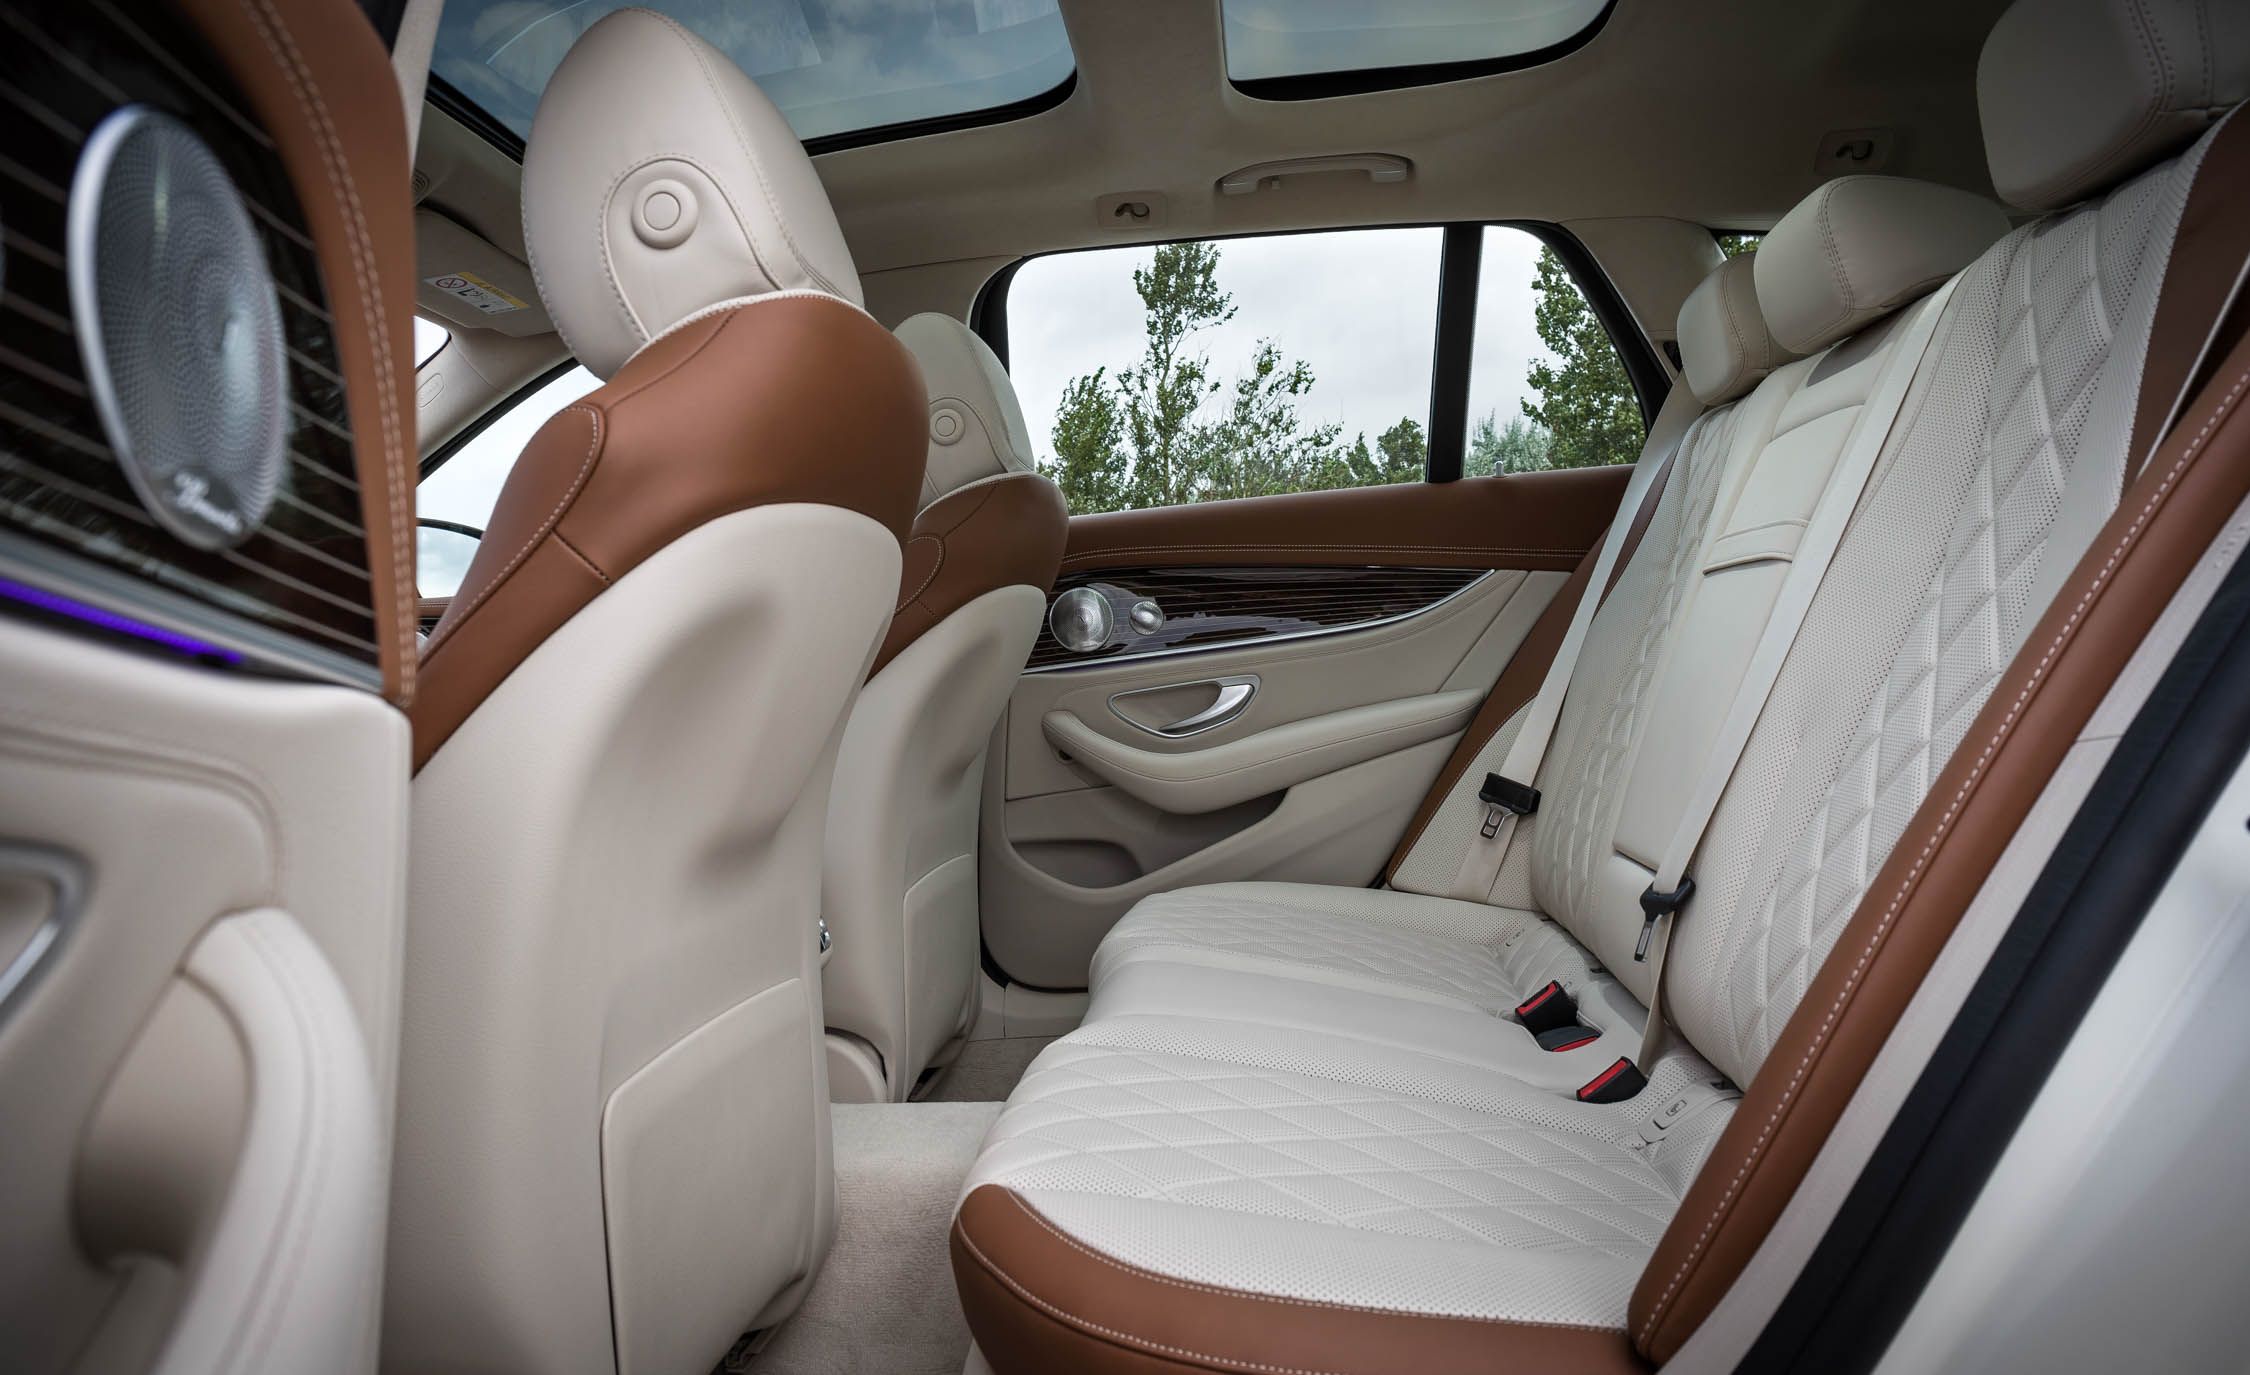 2017 Mercedes Benz E Class Wagon Interior Seats Rear (View 8 of 24)